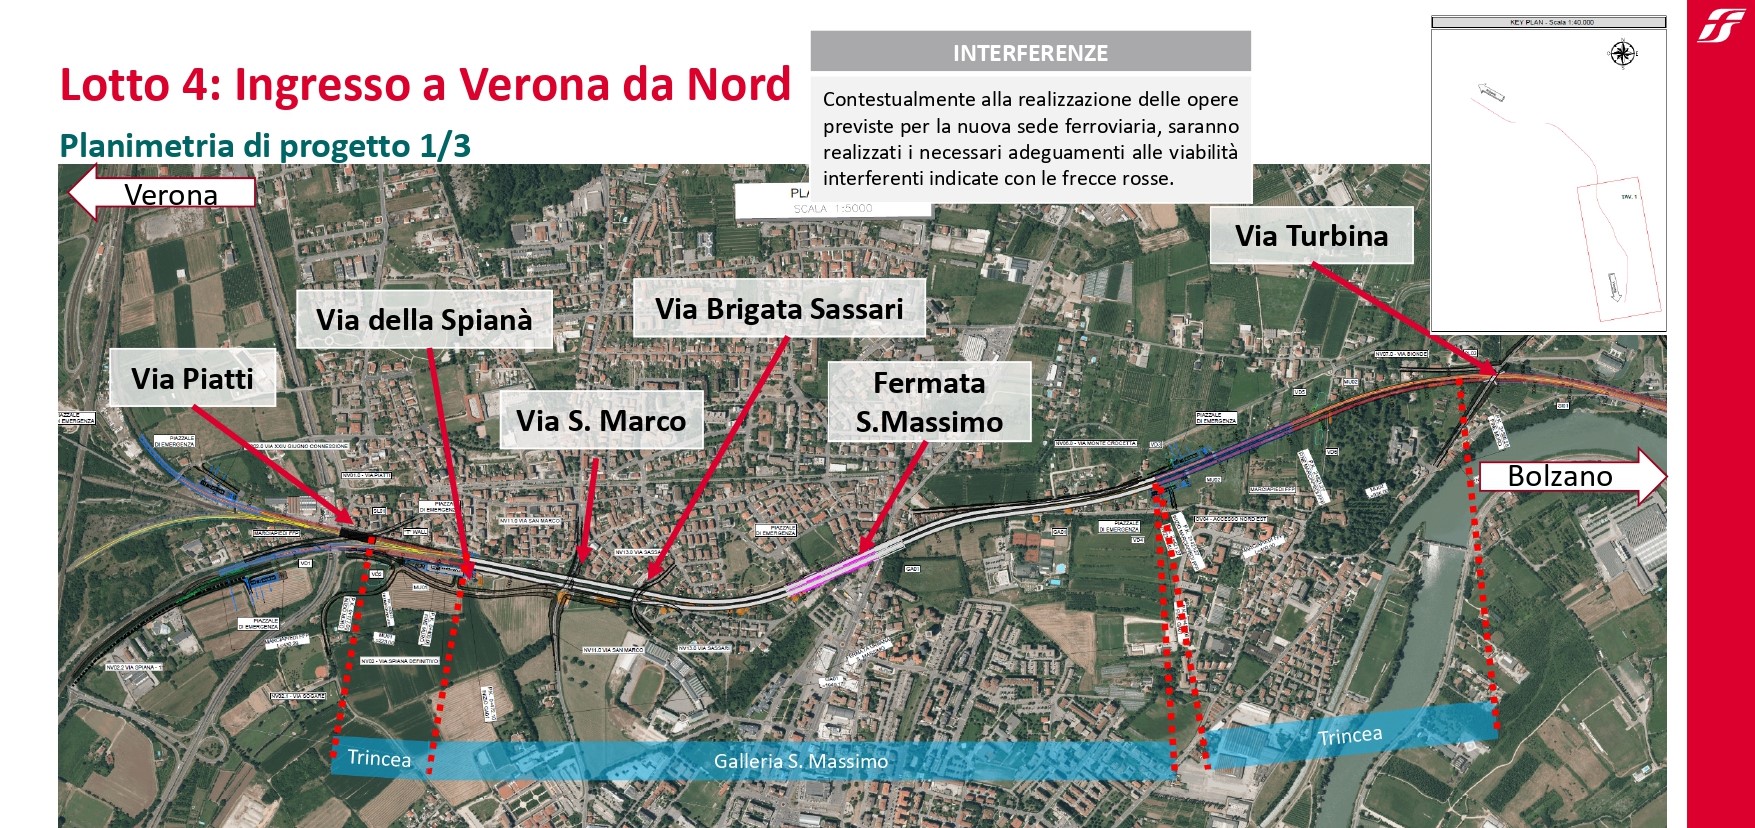 Alta velocità col Brennero, ecco l’ingresso a Verona Nord